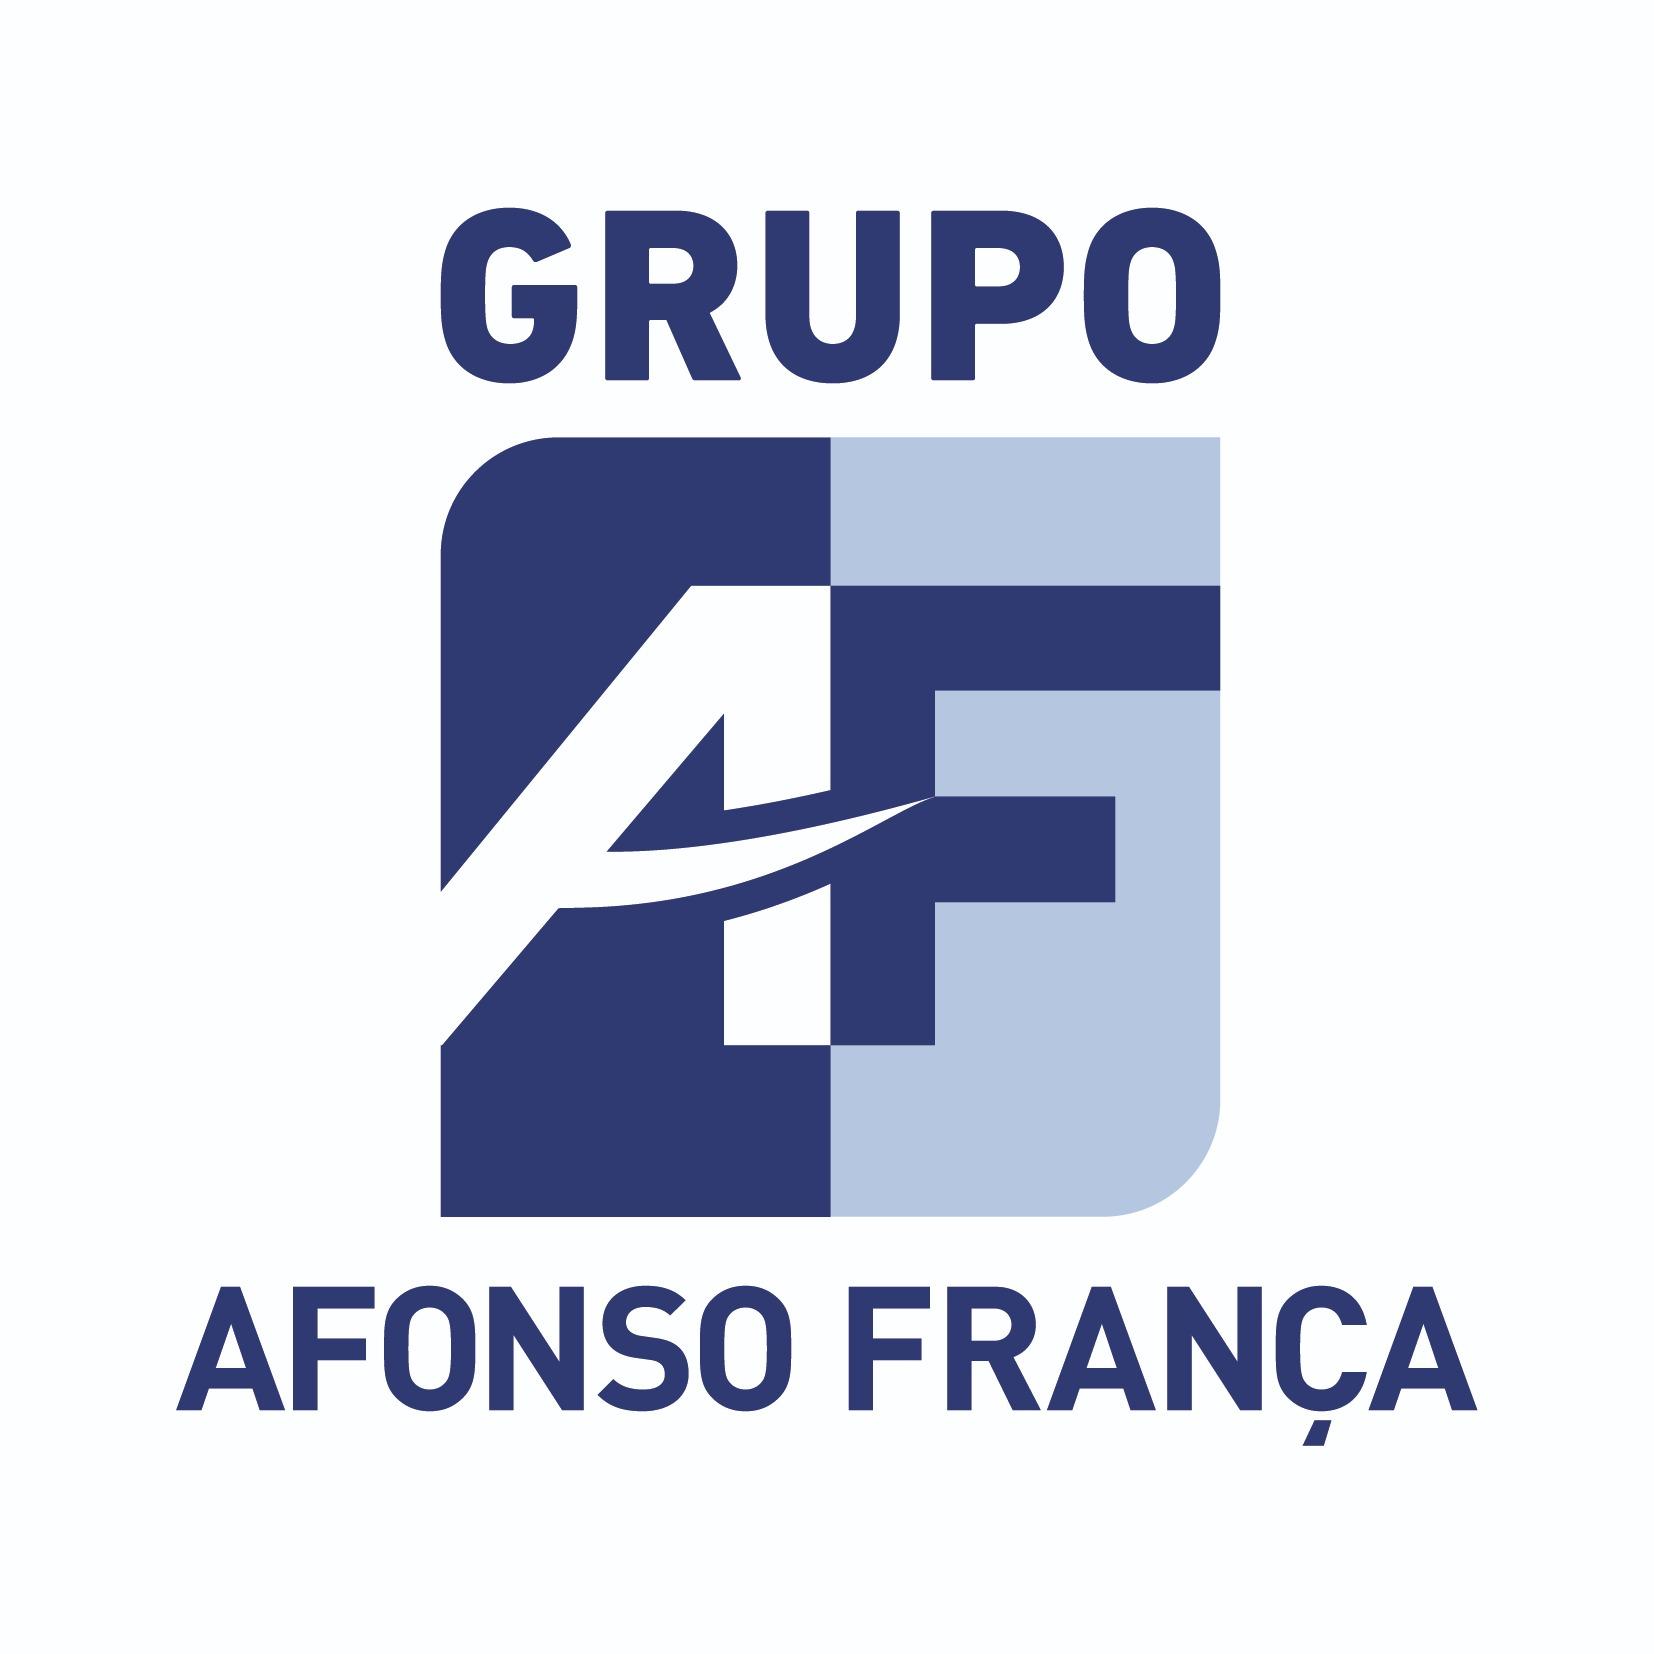 Company’s logo Grupo Afonso França